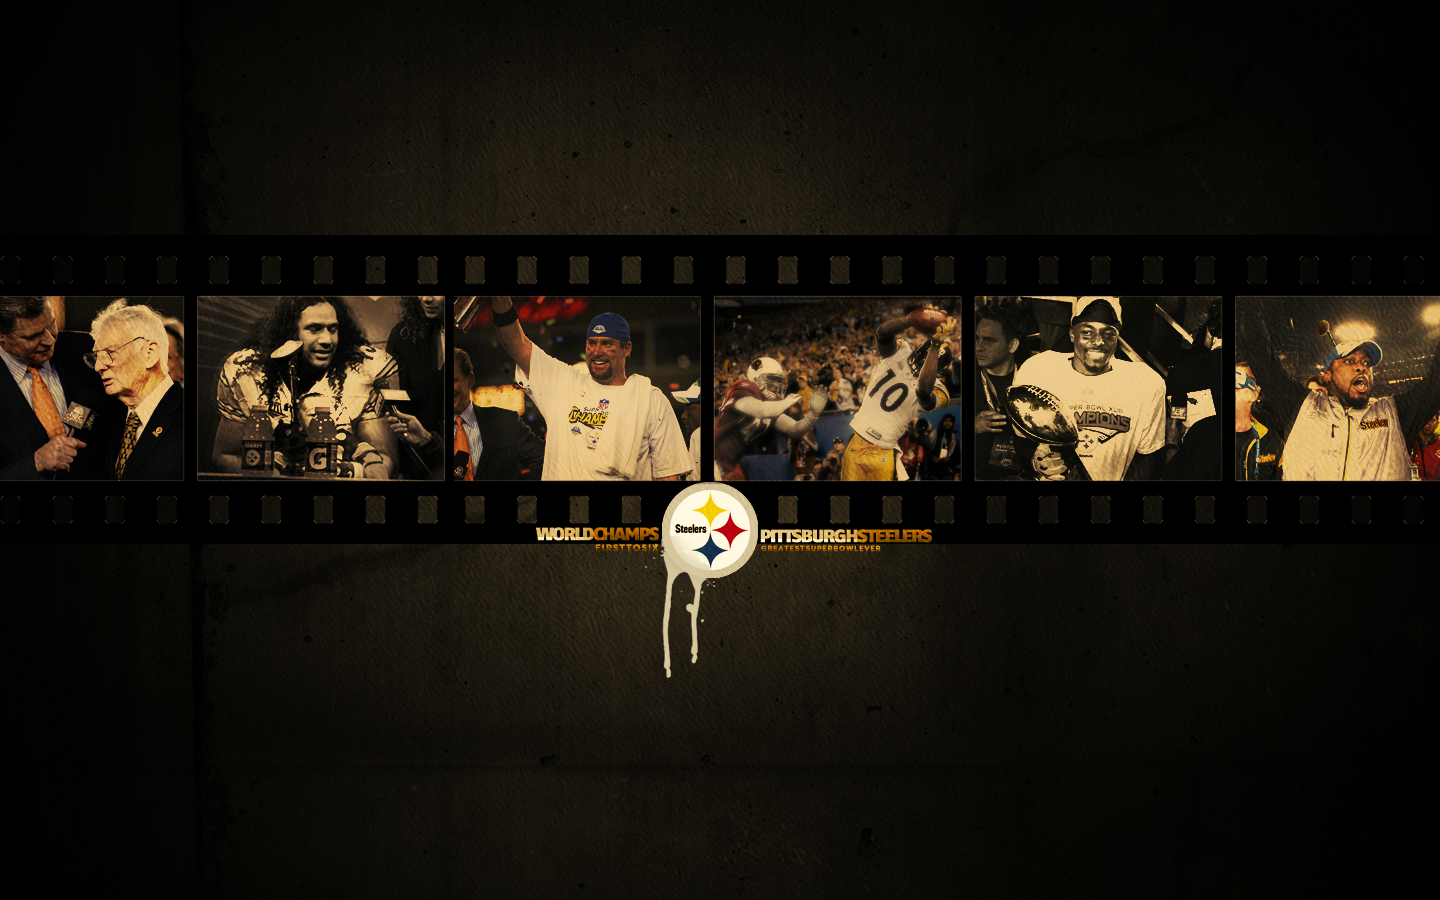  Pittsburgh Steelers wallpaper wallpaper Pittsburgh Steelers 1440x900